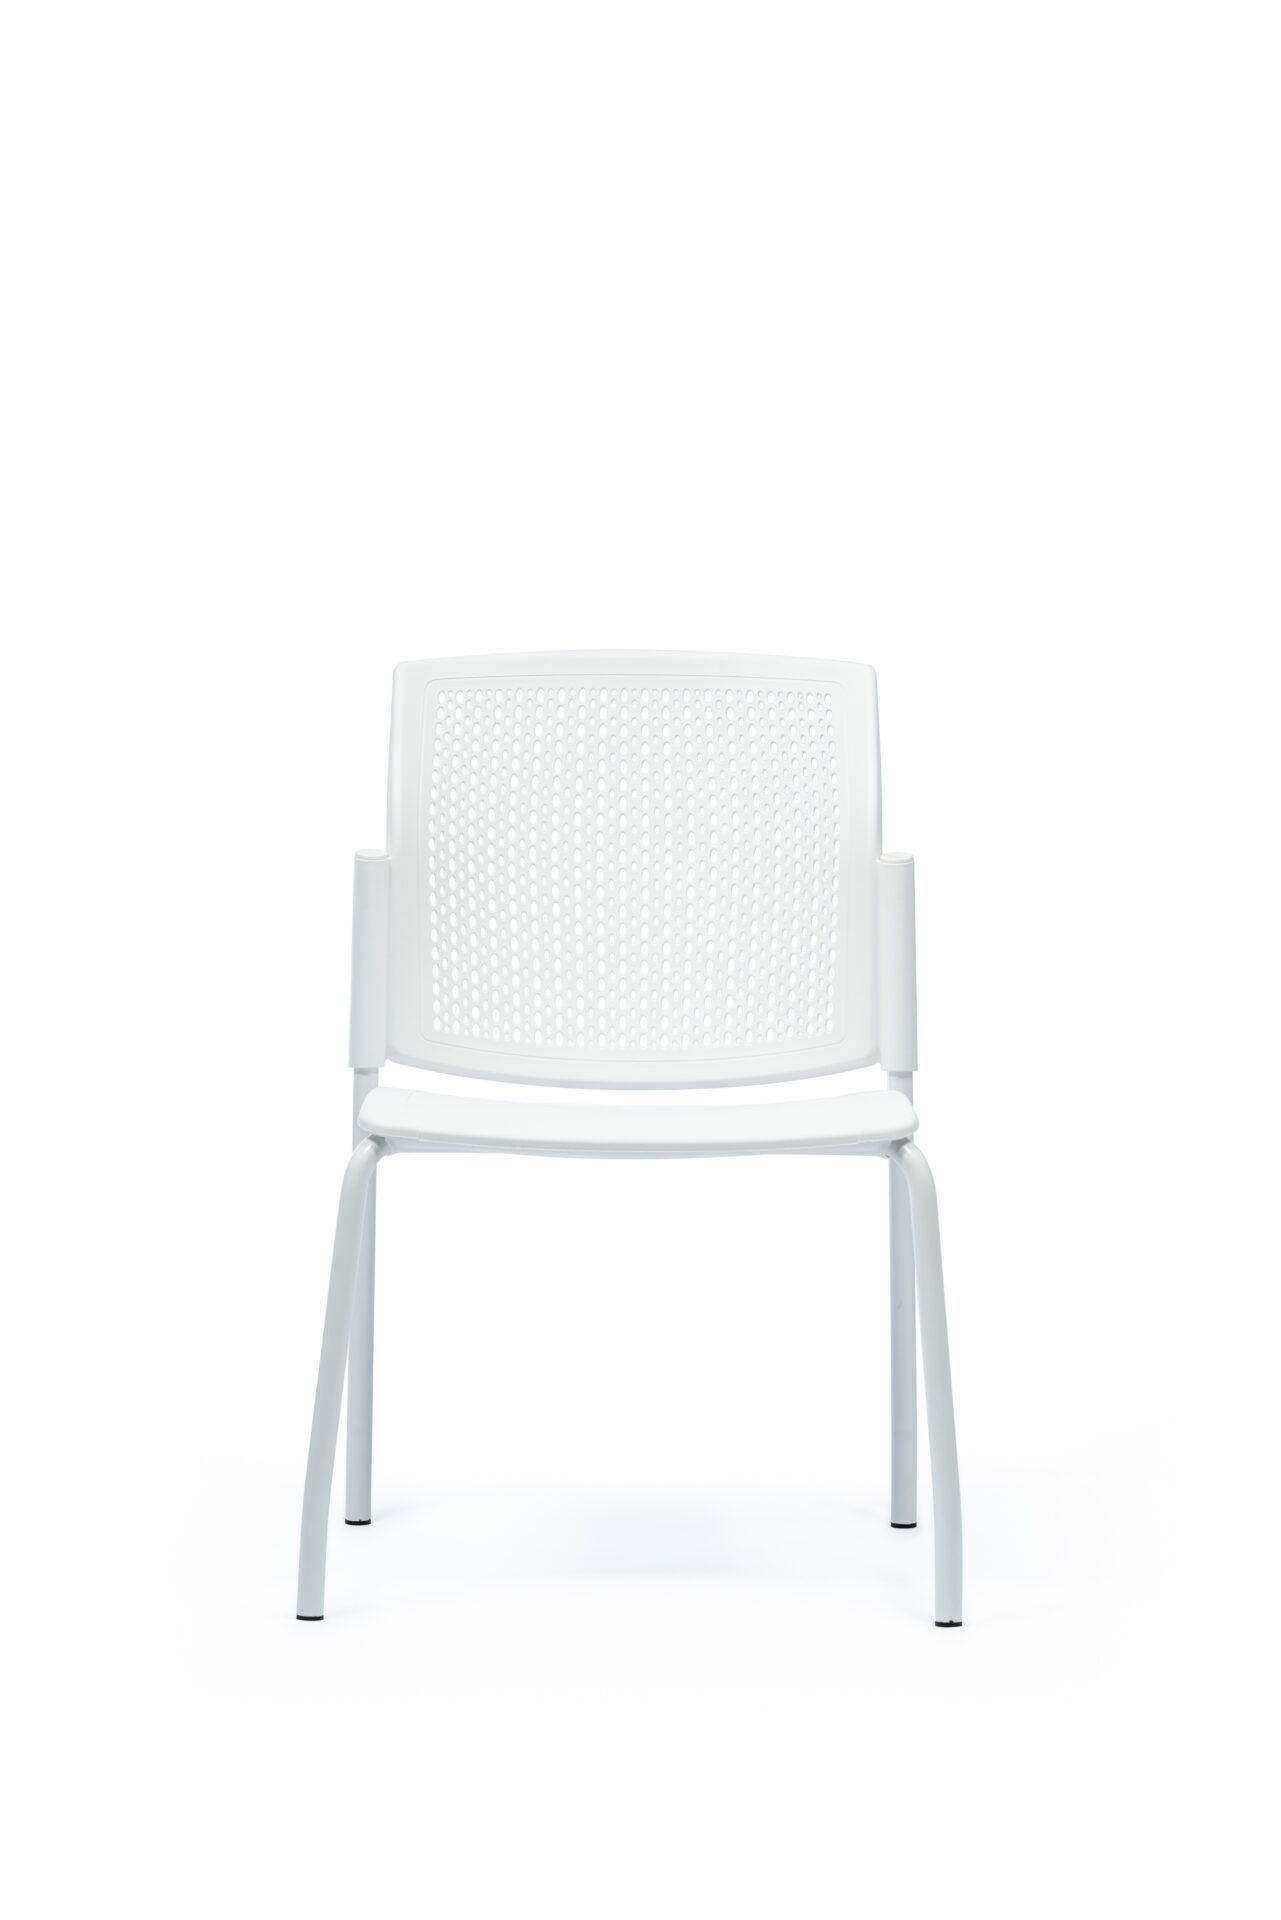 Białe krzesło biurowe od przodu 4job B-Group